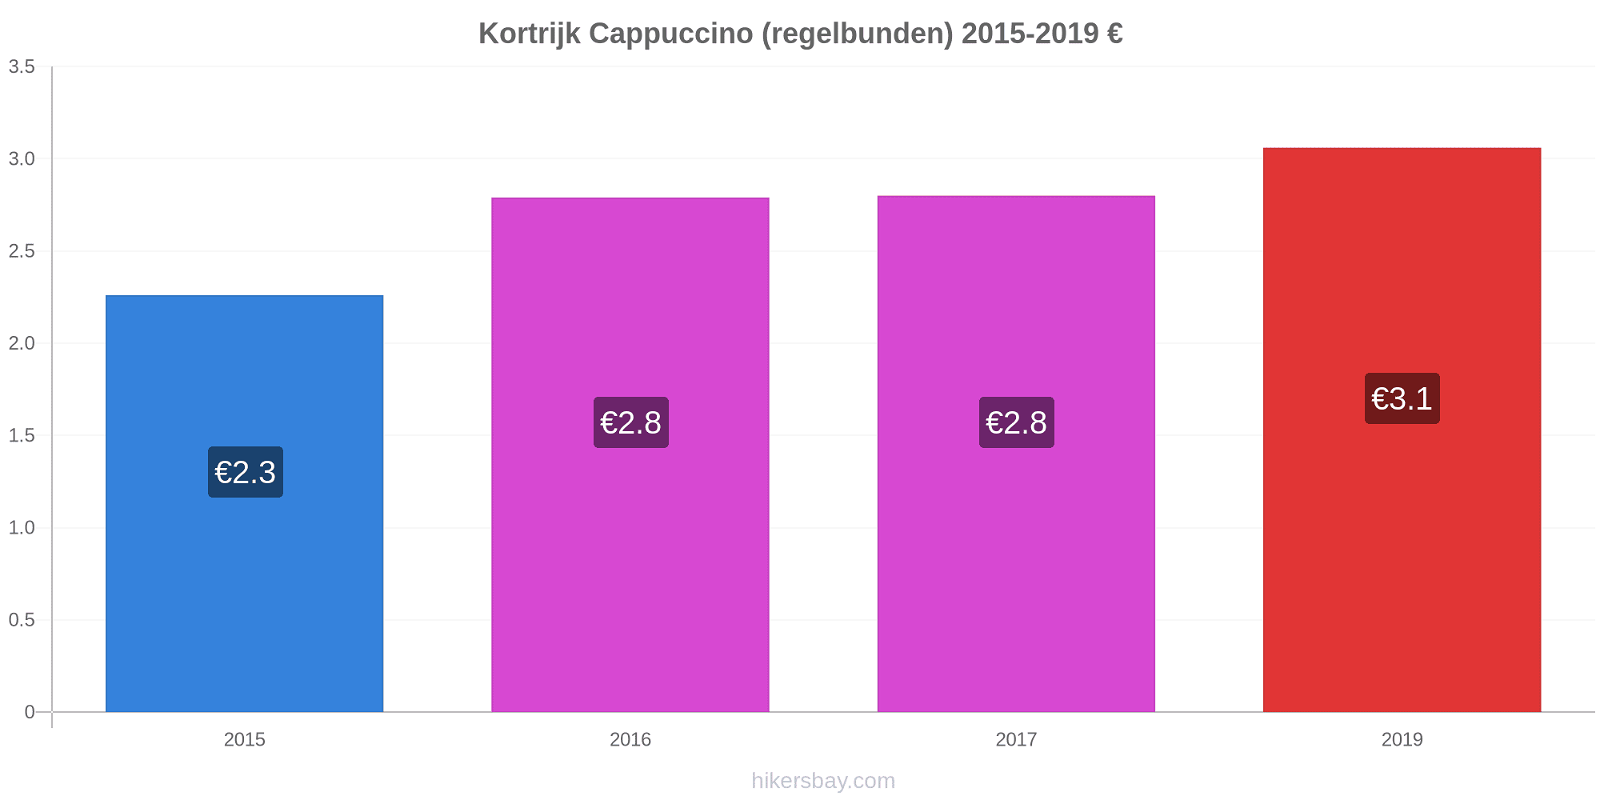 Kortrijk prisförändringar Cappuccino (regelbunden) hikersbay.com